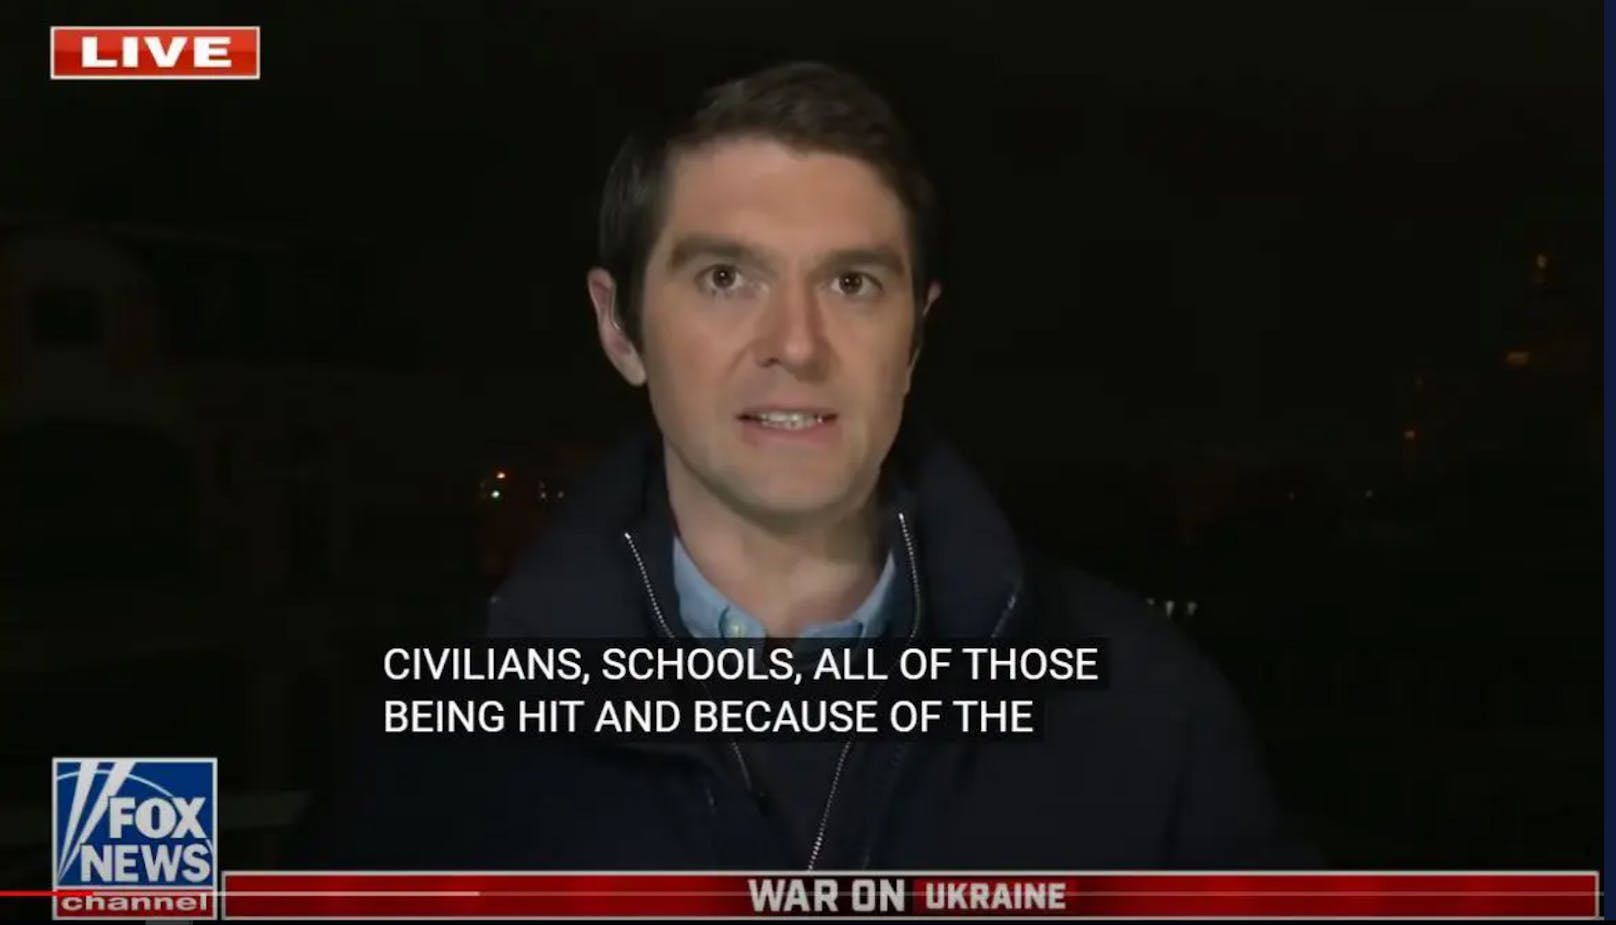 Laut dem Sender Fox News wurde der langjährige Kriegsreporter Benjamin Hall (39) bei Kämpfen außerhalb der Hauptstadt Kiew schwer verletzt.